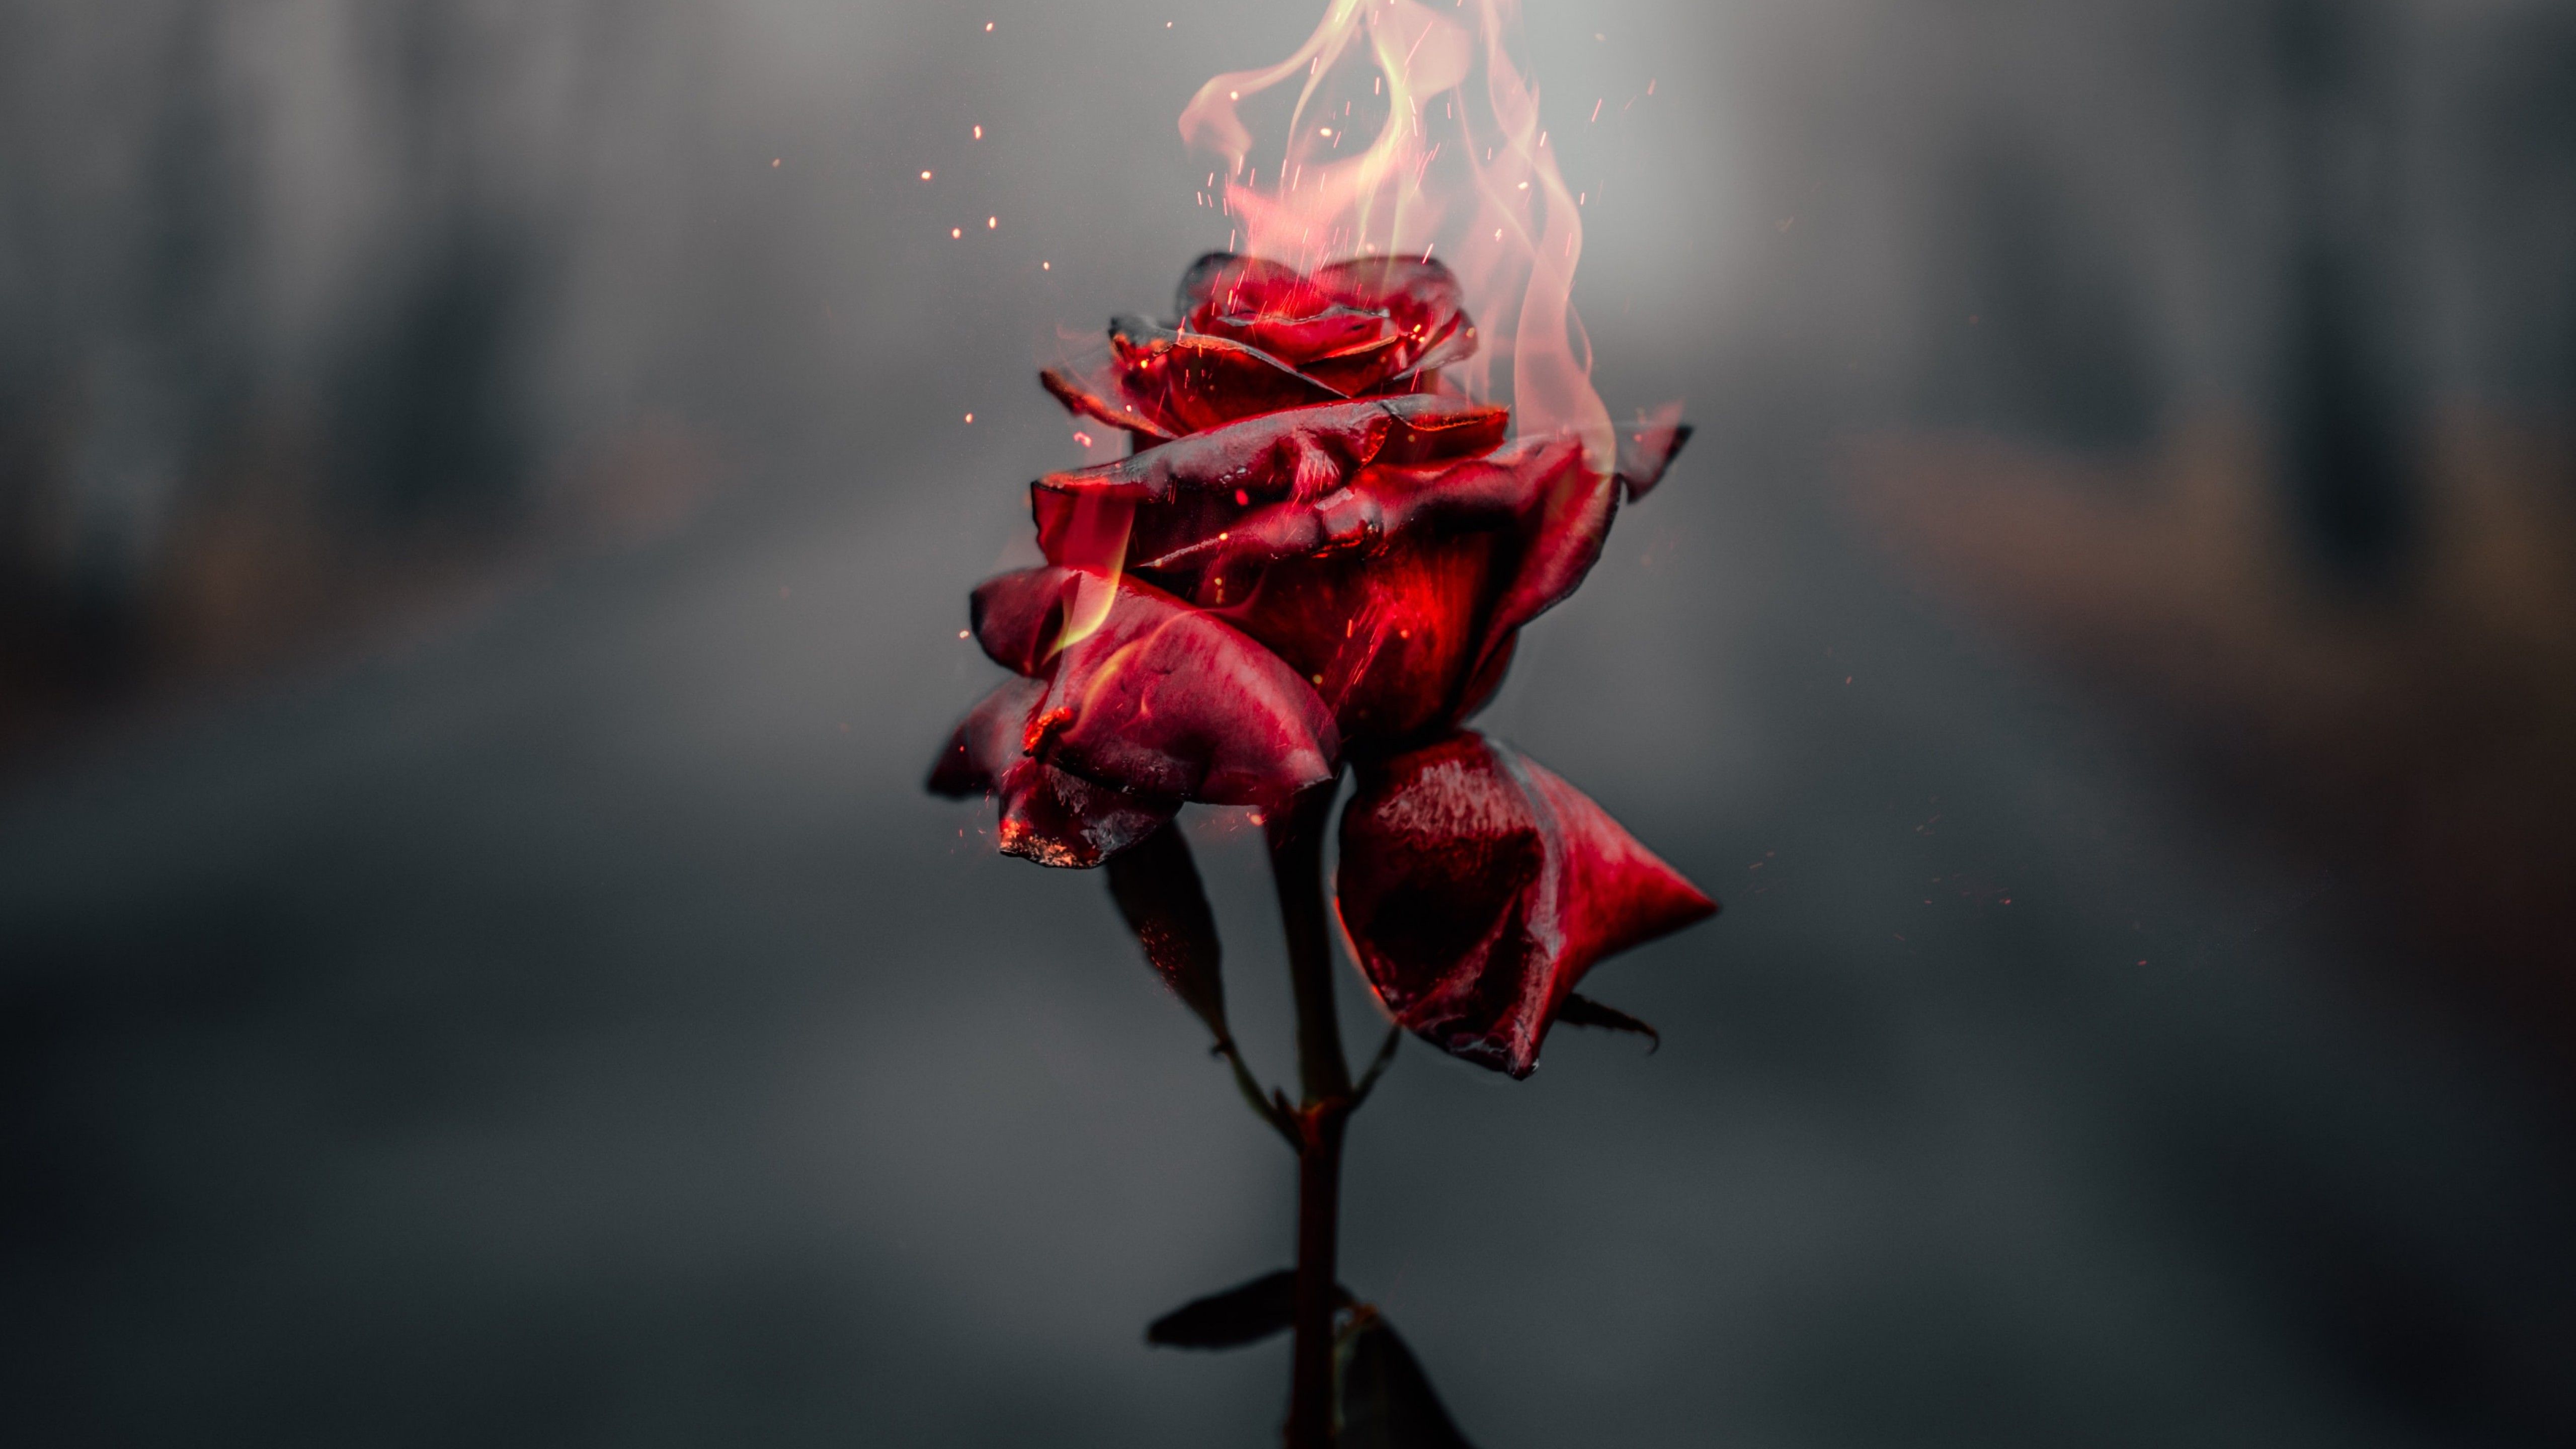 Rose flower 4K Wallpaper, Fire, Burning, Dark, Flowers